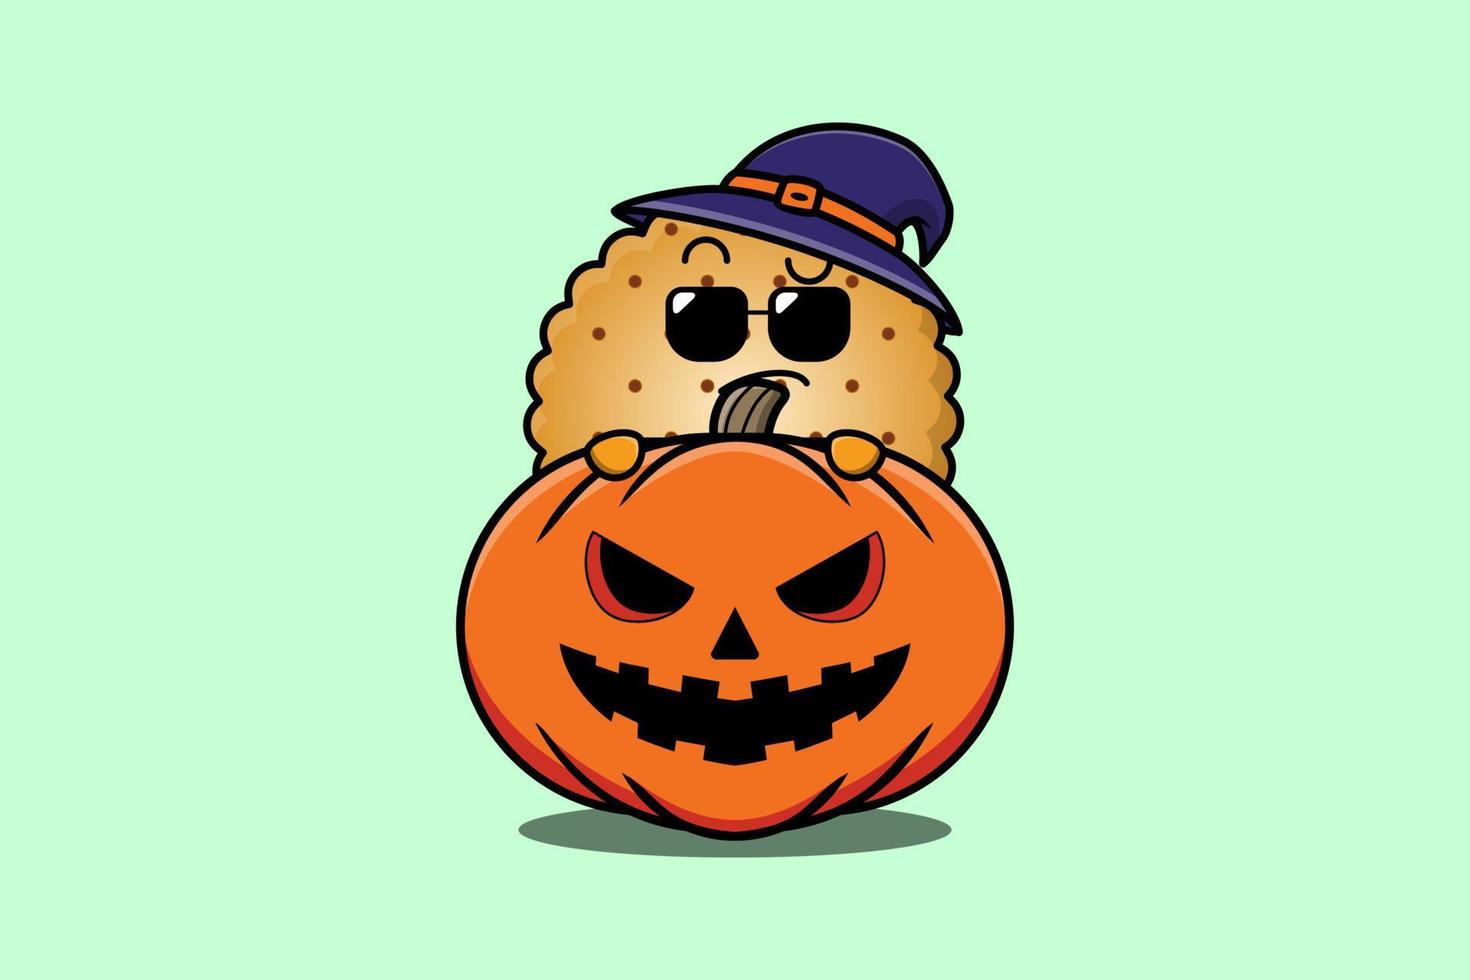 Cute Cookies cartoon hiding in pumpkin halloween vector